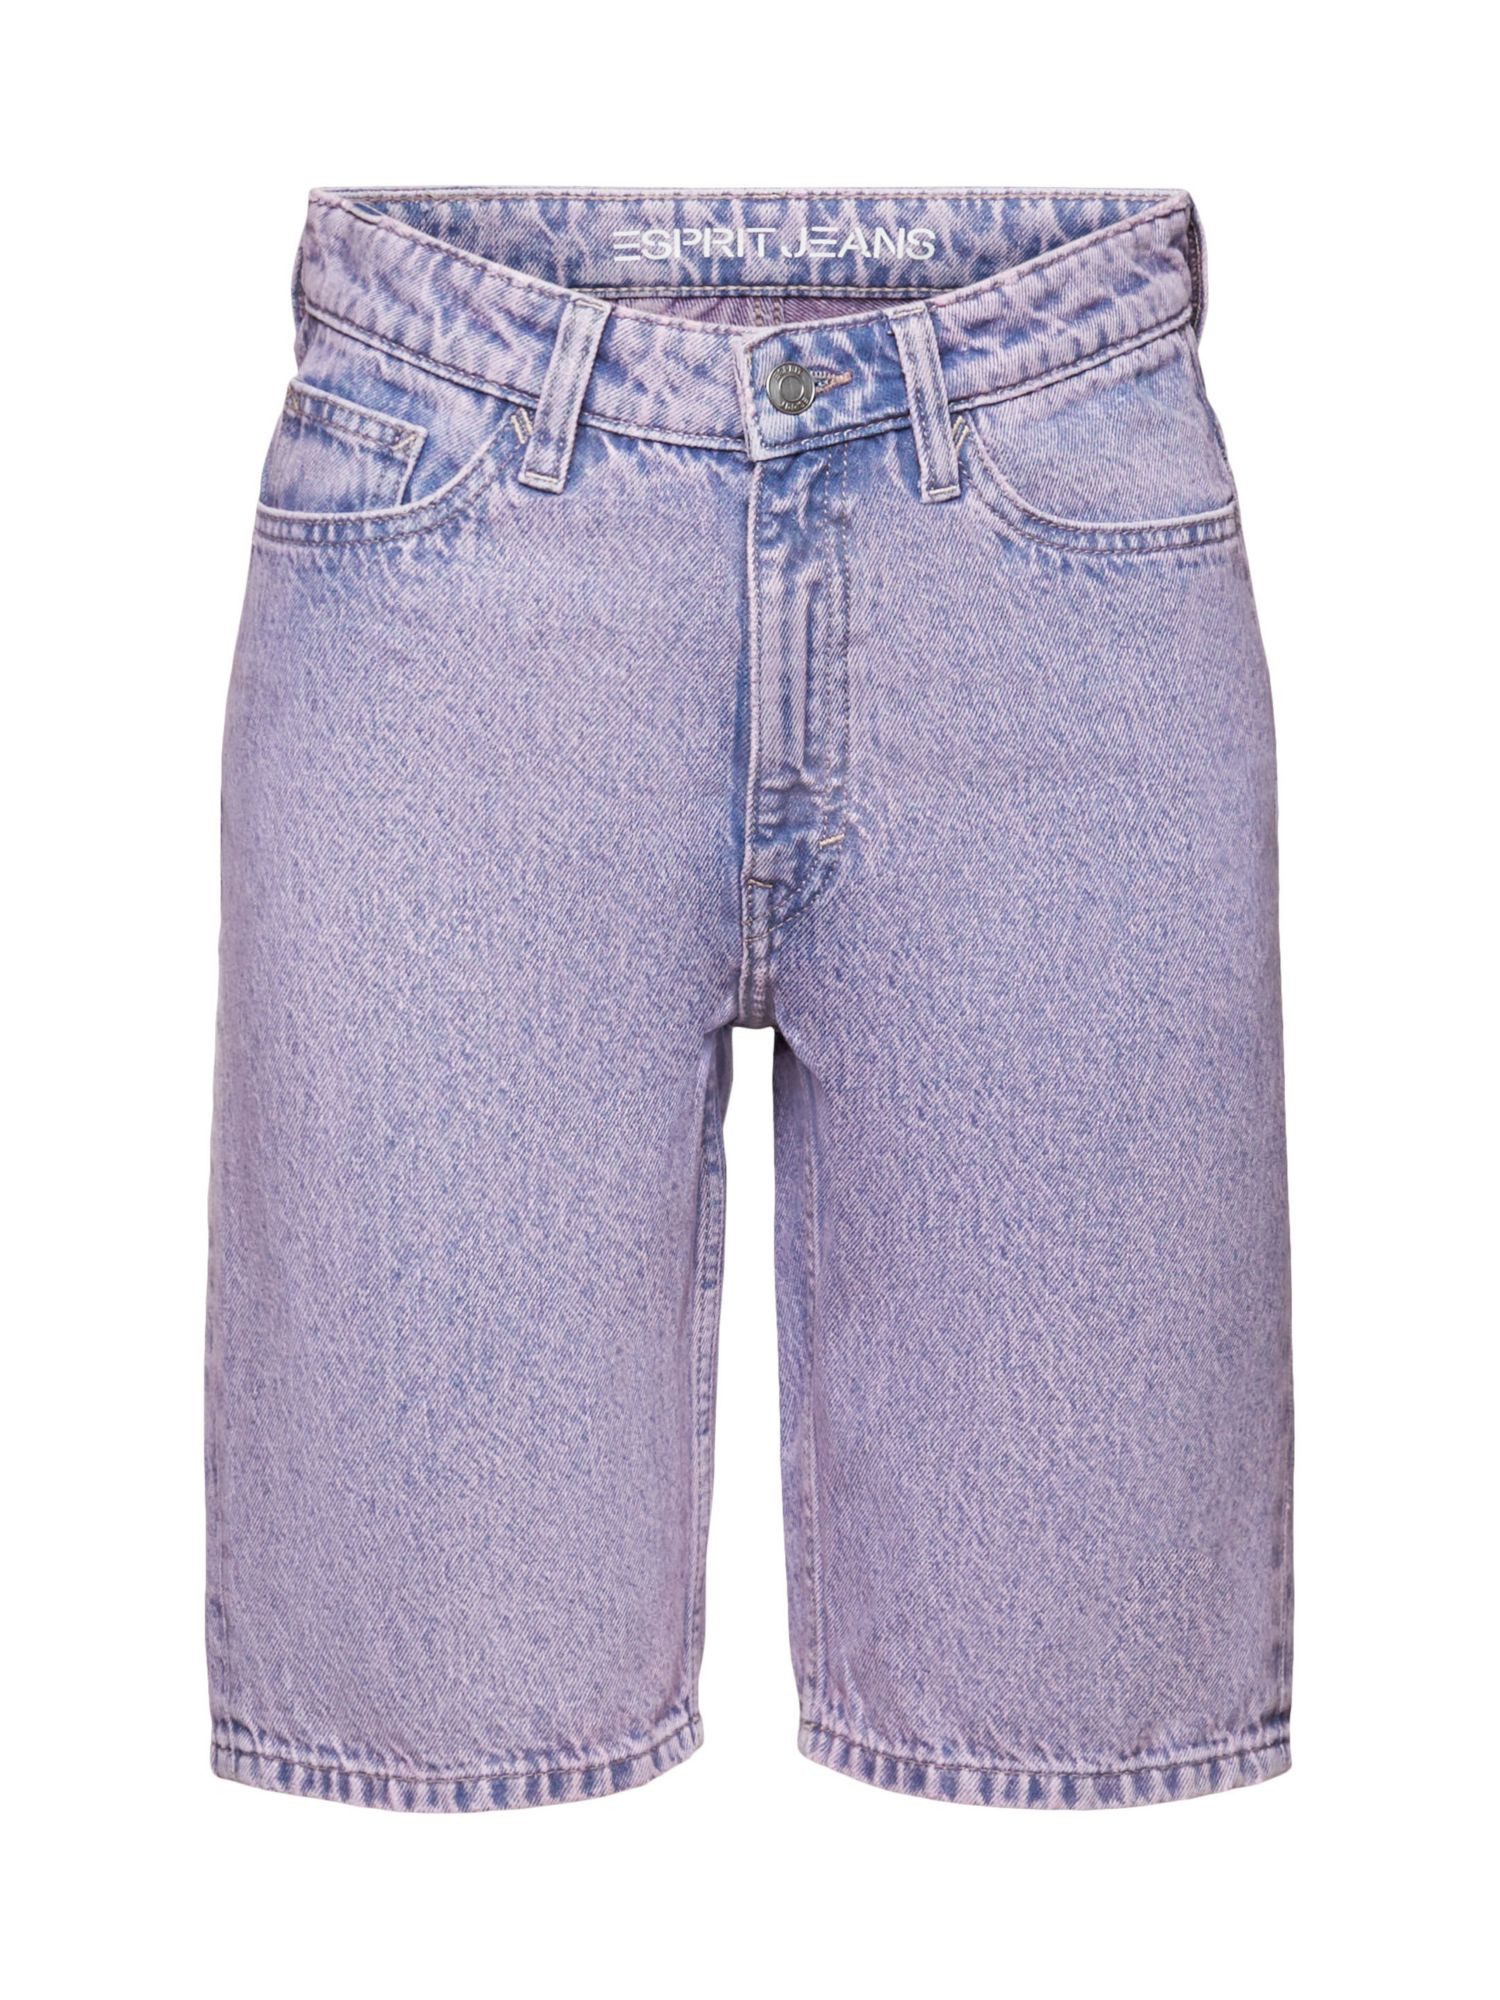 Esprit Jeansshorts Shorts in gerader Passform und Retro-Optik